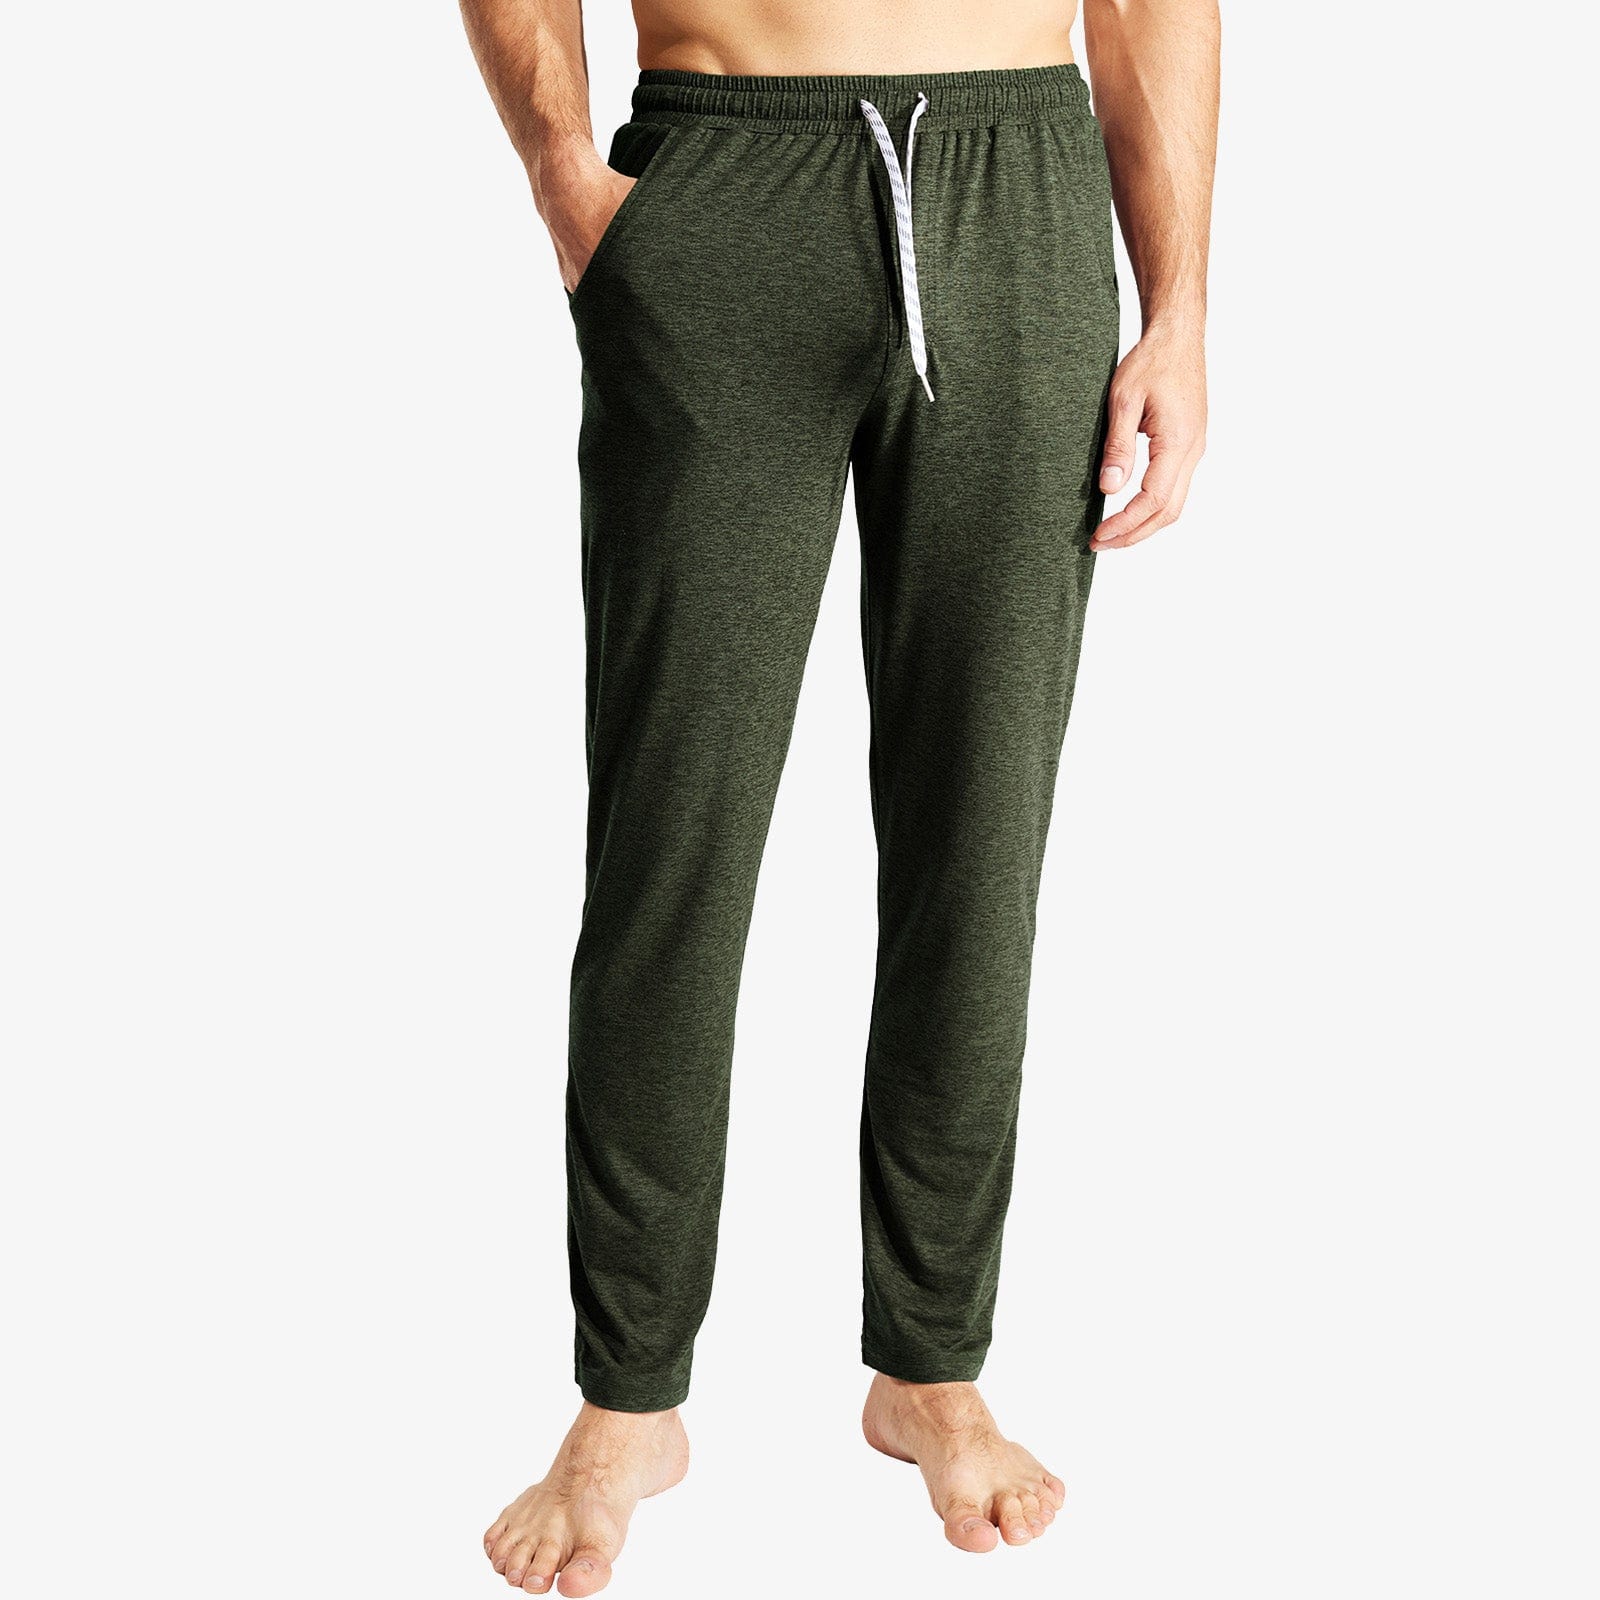 Men's Soft Lounge Pants Open Bottom Sweatpants with Pocket Men Train Pants MIER